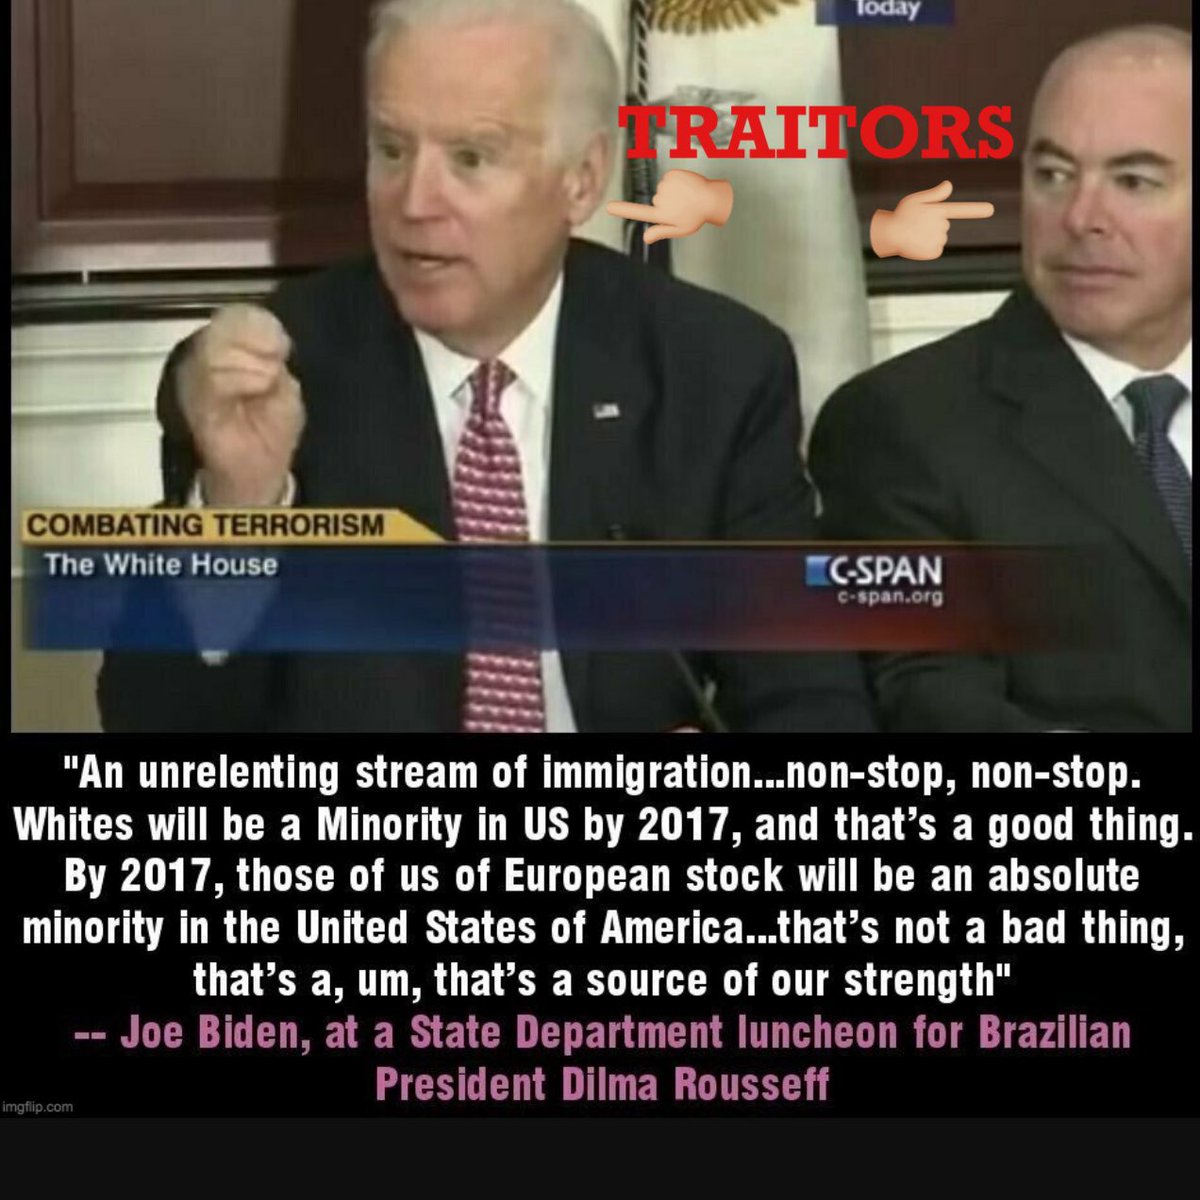 Biden: “The border is closed” Lies lies lies